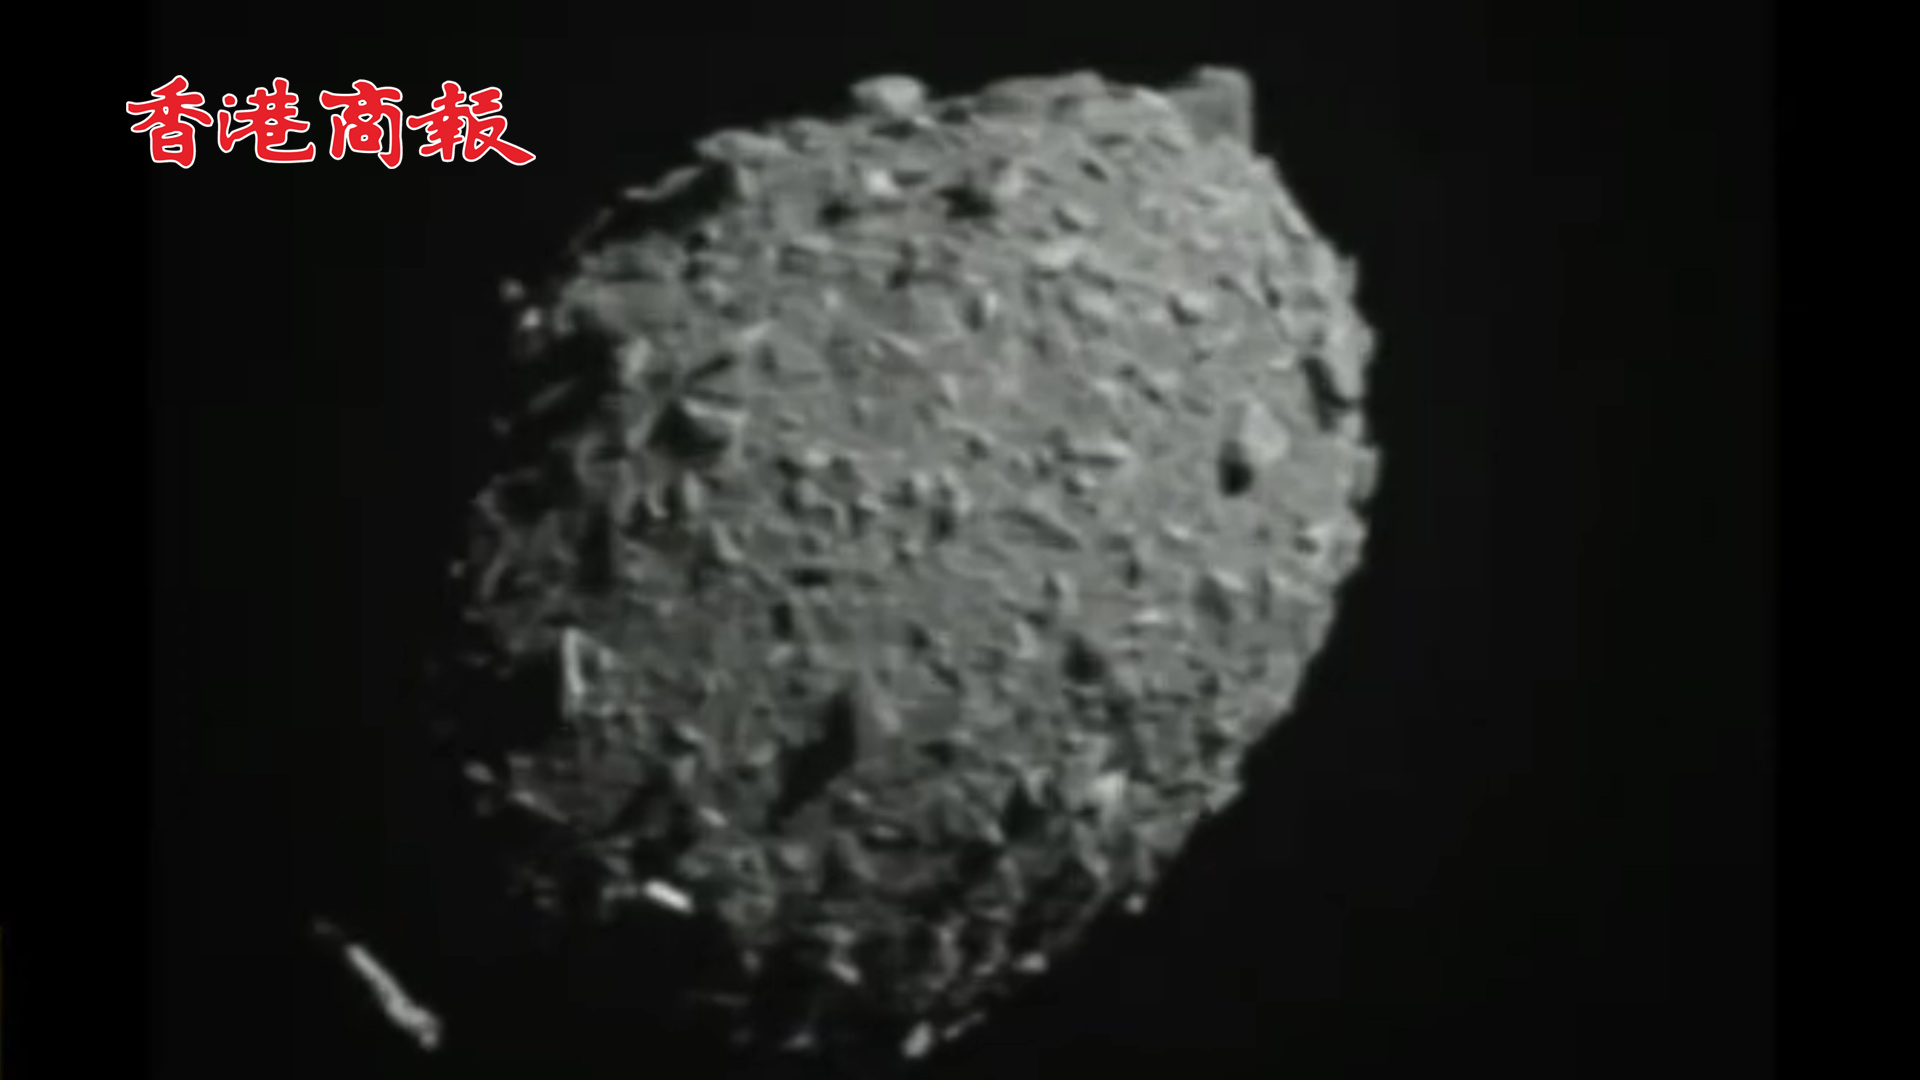 有片丨美宇宙飛船撞擊小行星 使其偏離原運行軌道